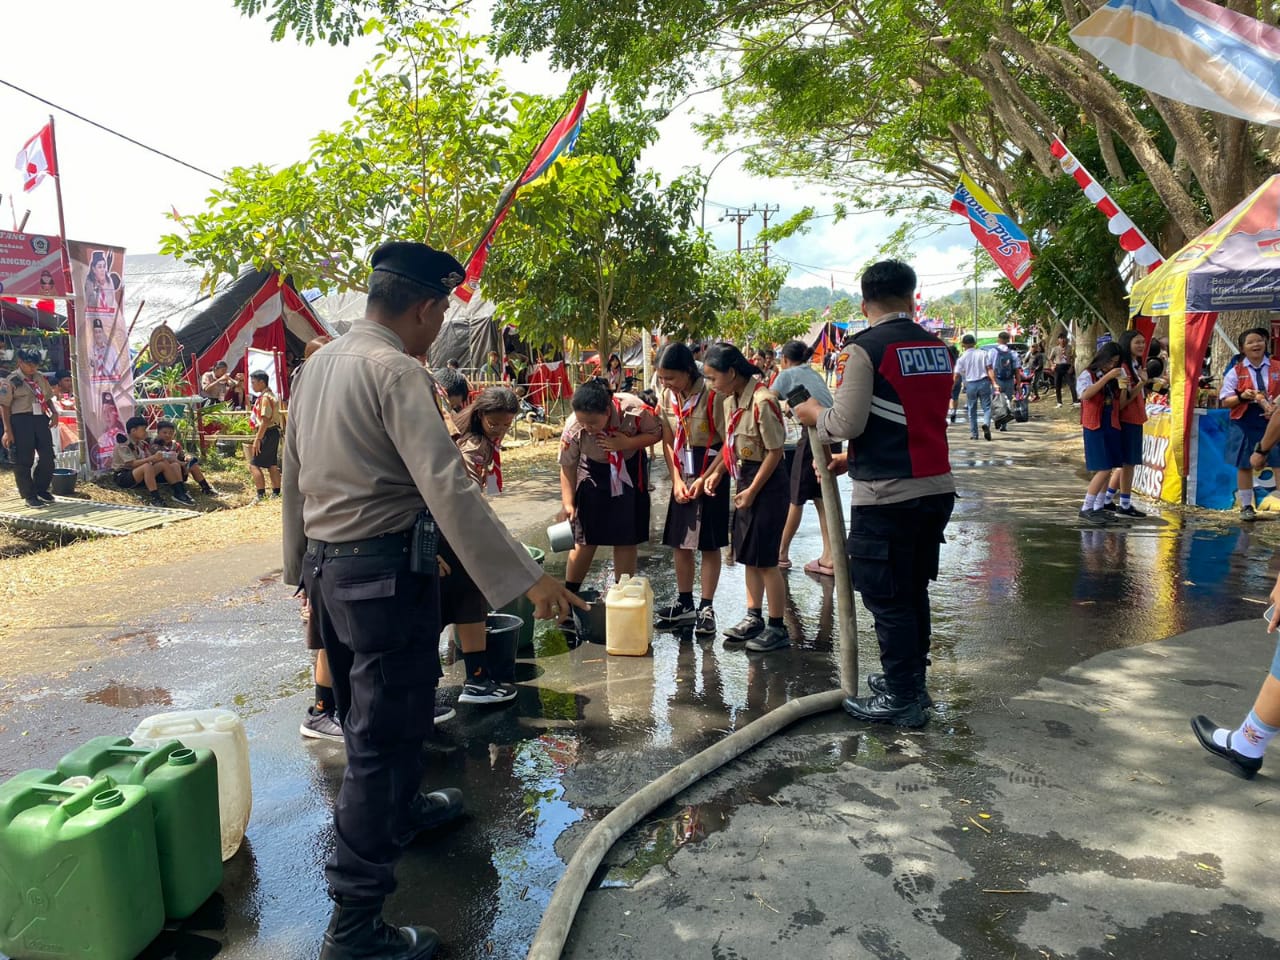 Inovasi Problem Solving dari Polres Minahasa untuk kendala air bersih di Perkemahan Pramuka di Tondano (Foto Humas Polres).